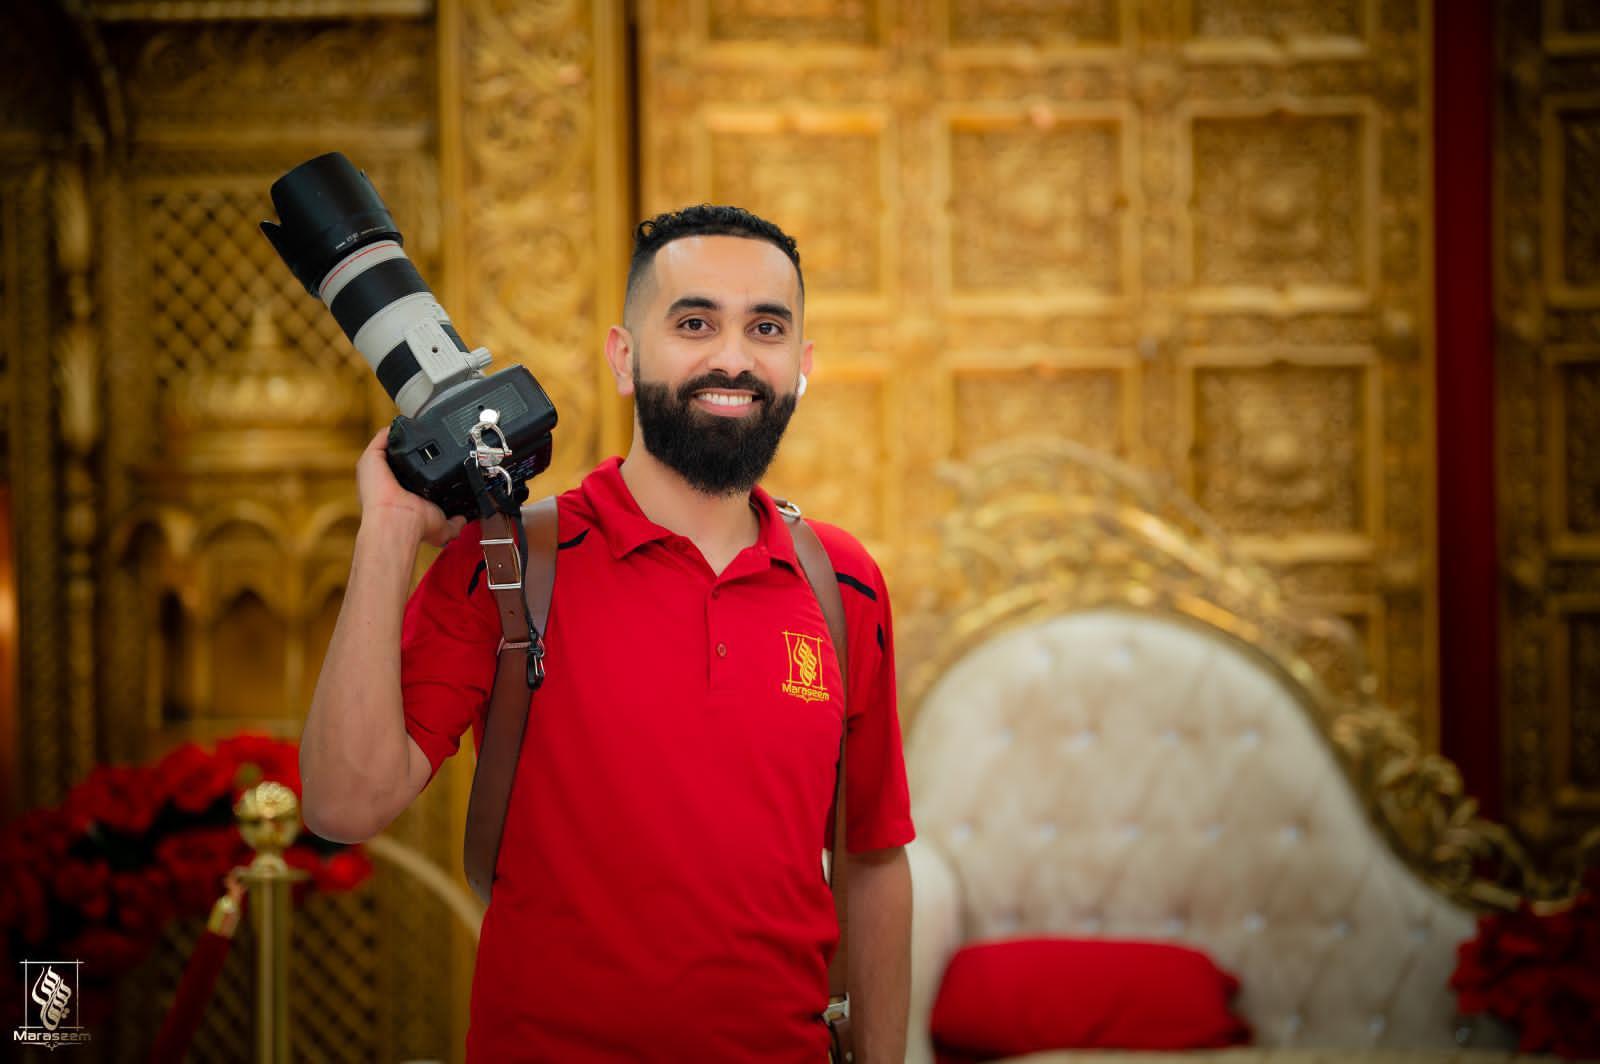 المصور الفوتوغرافي والمهندس المعماري اليمني الأمريكي، خالد جمال آل قاسم (الأمة برس)